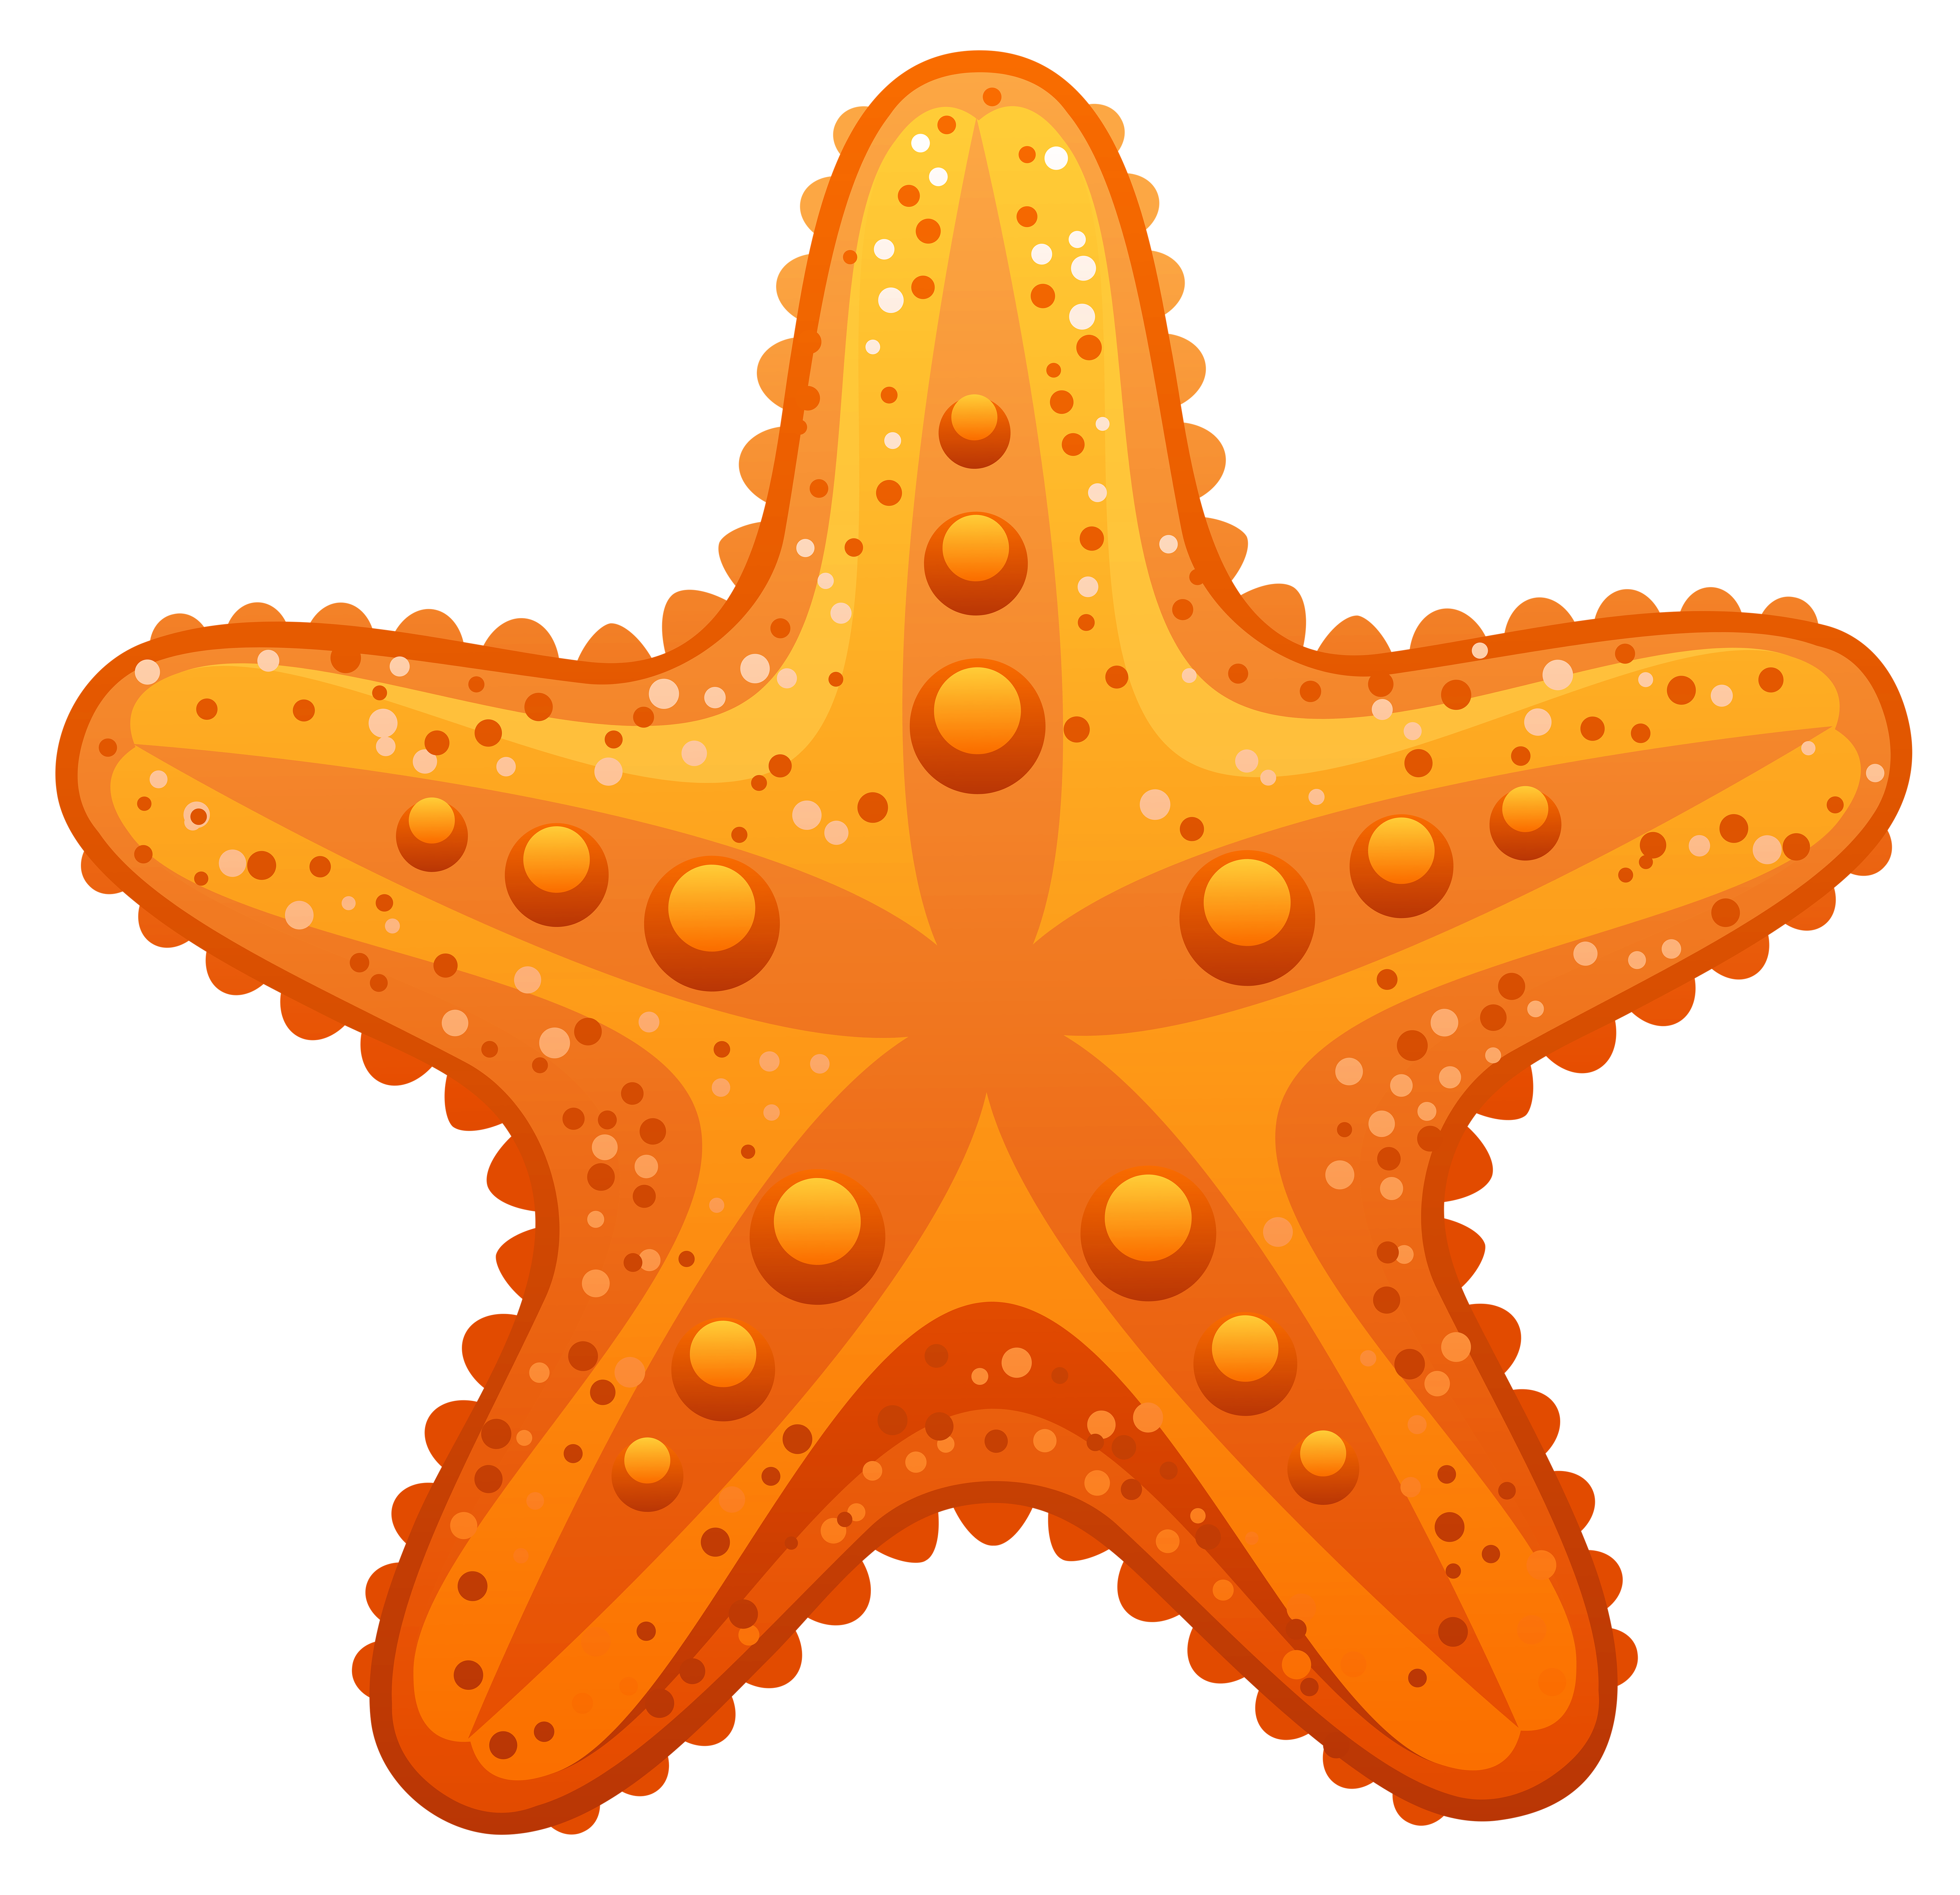 Cliparti1 starfish clip art